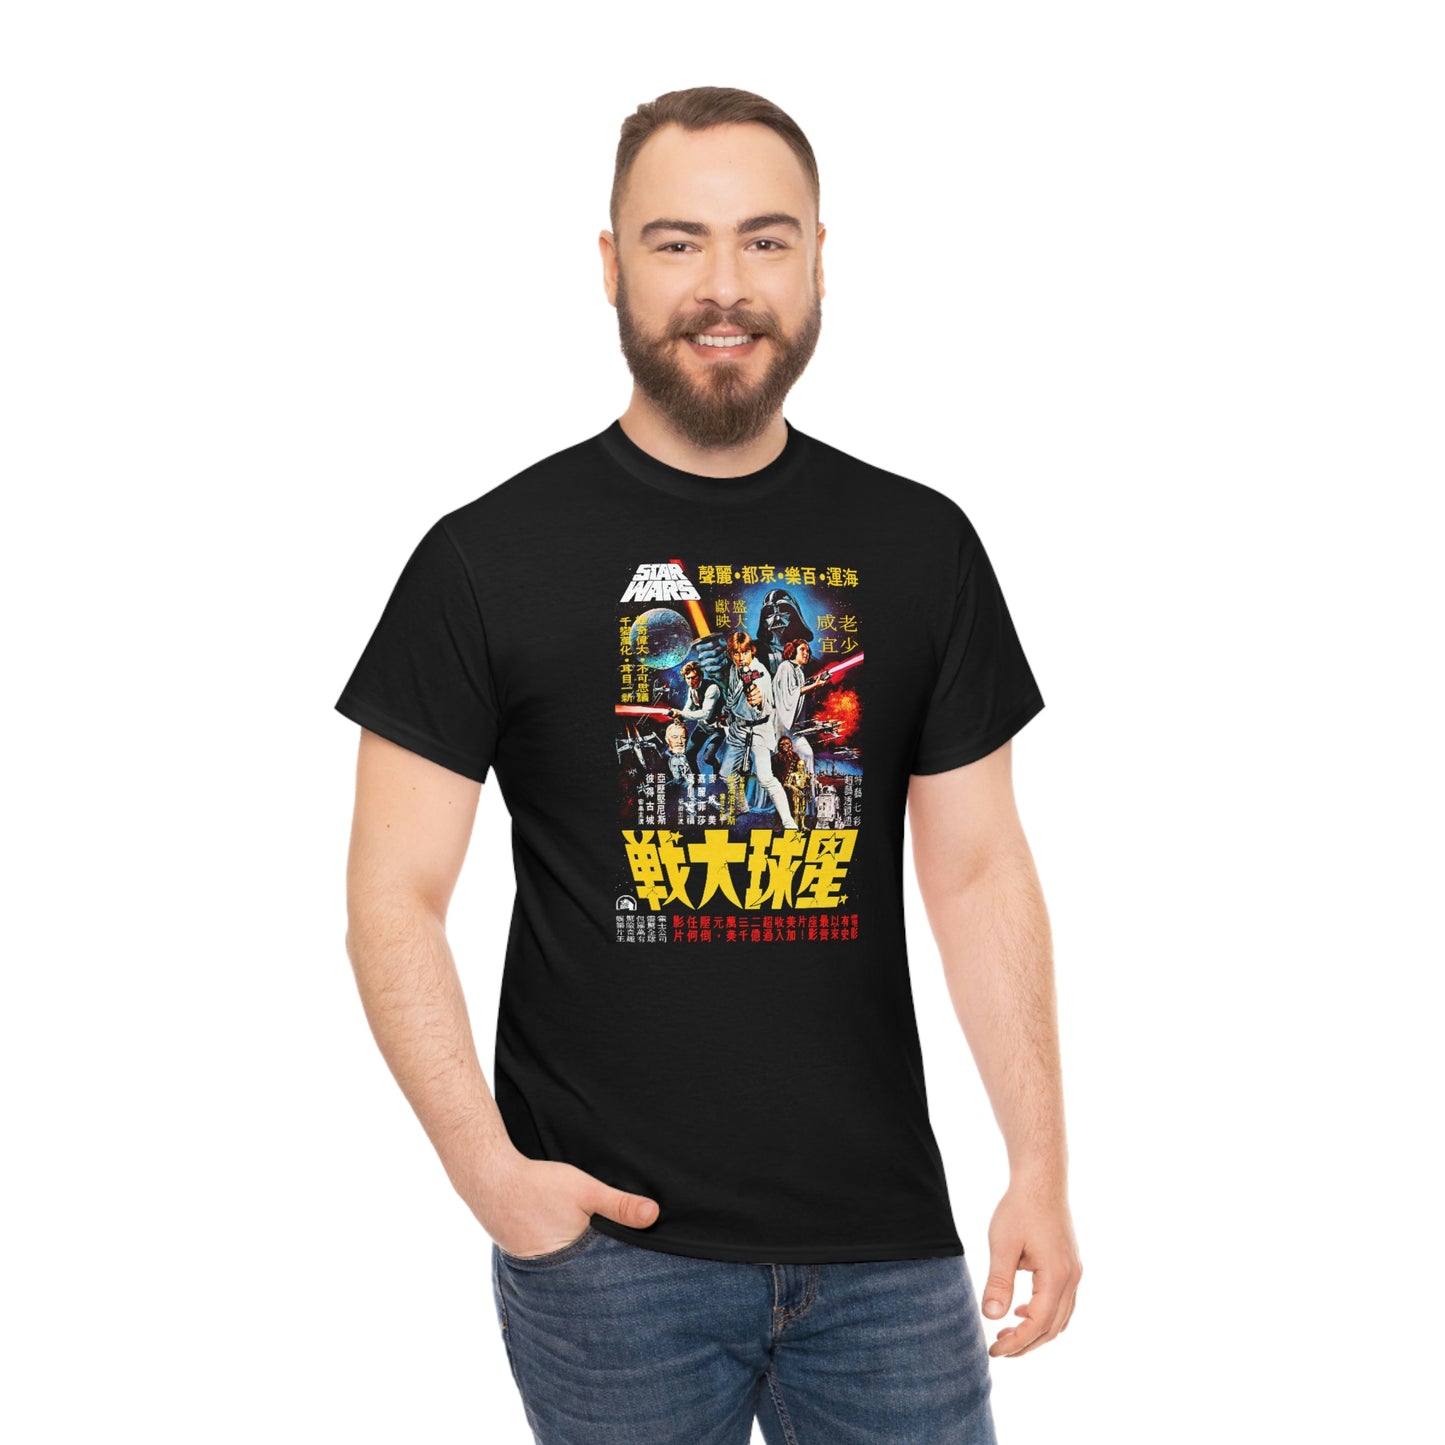 Star Wars Japanese T-Shirt